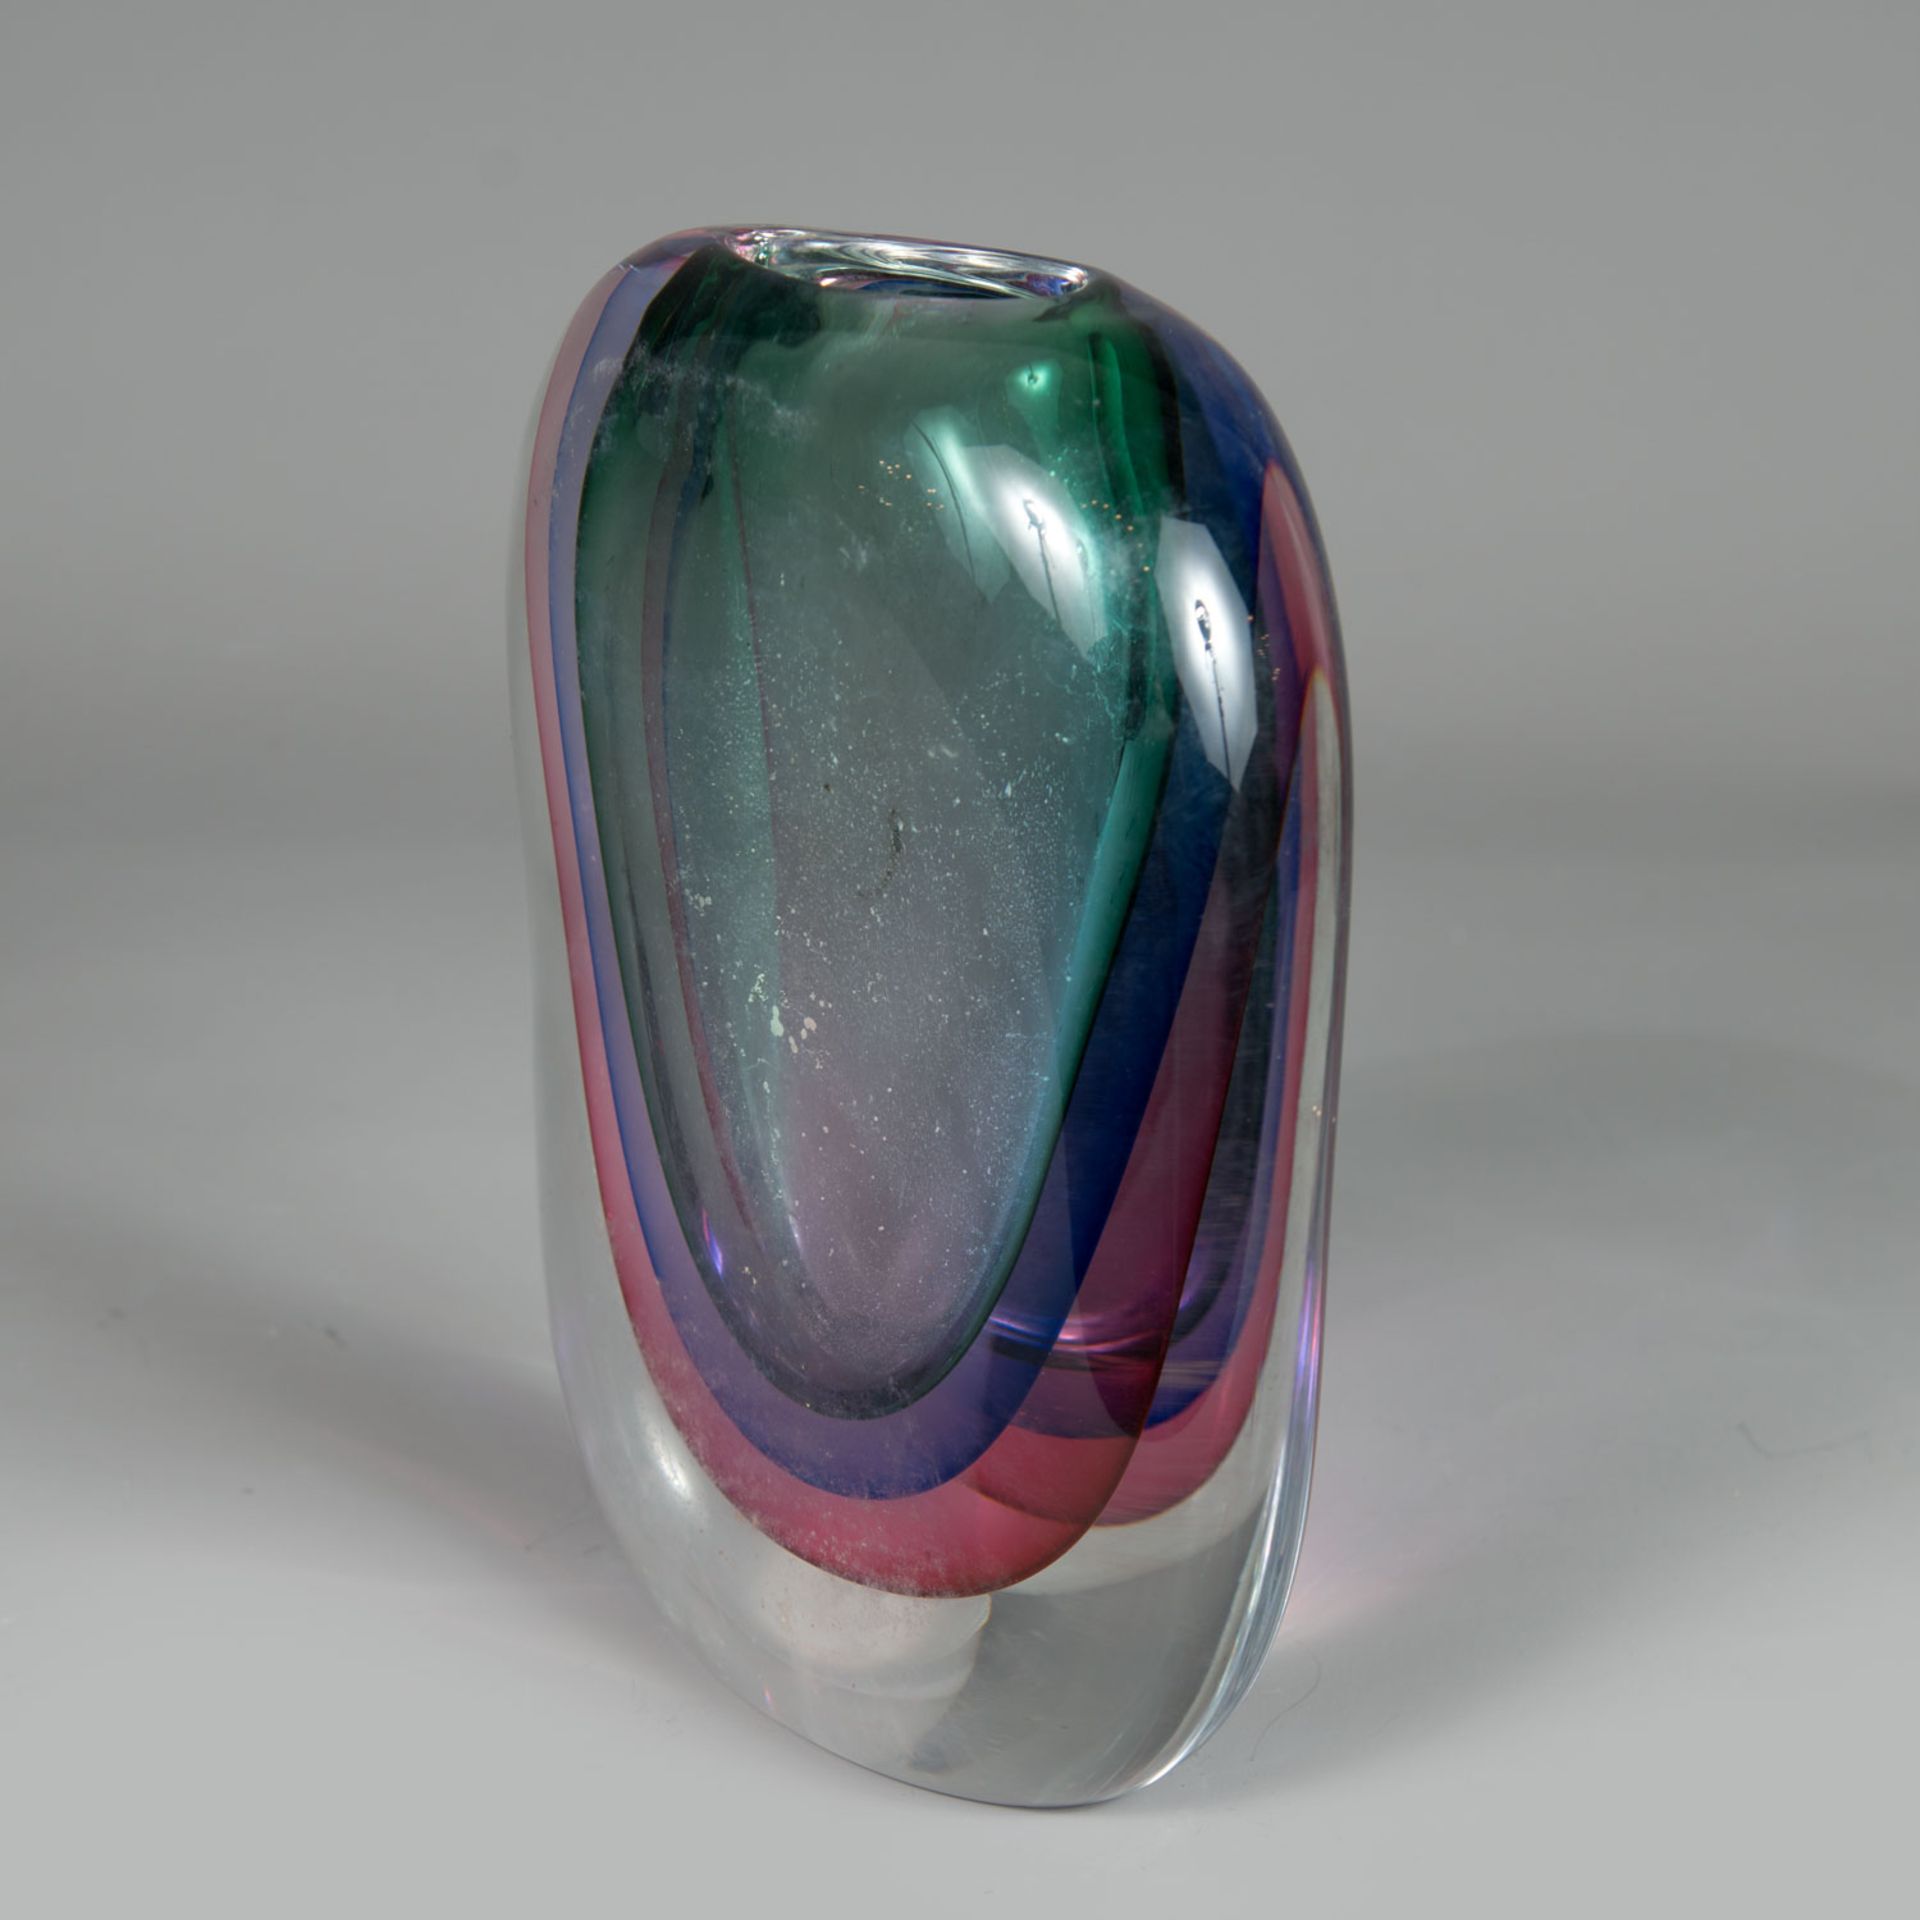 Murano glass vase - Image 2 of 3